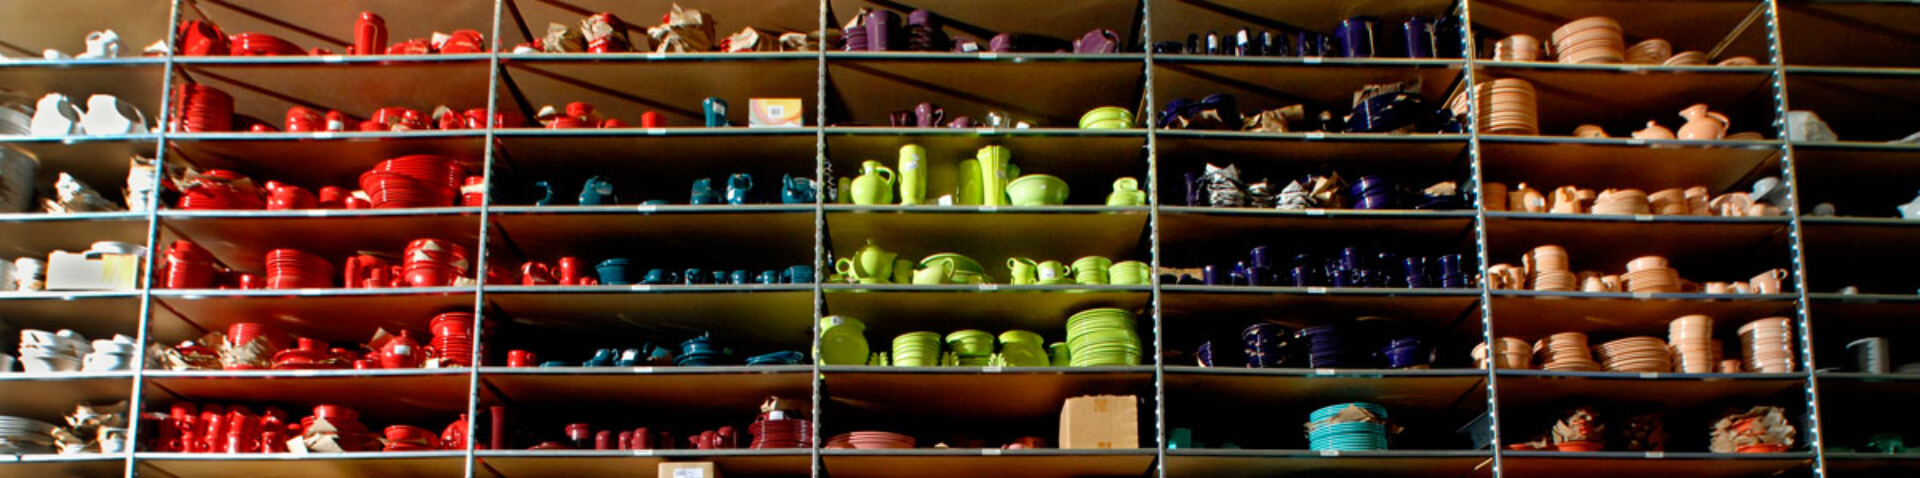 shelf of colorful ceramics